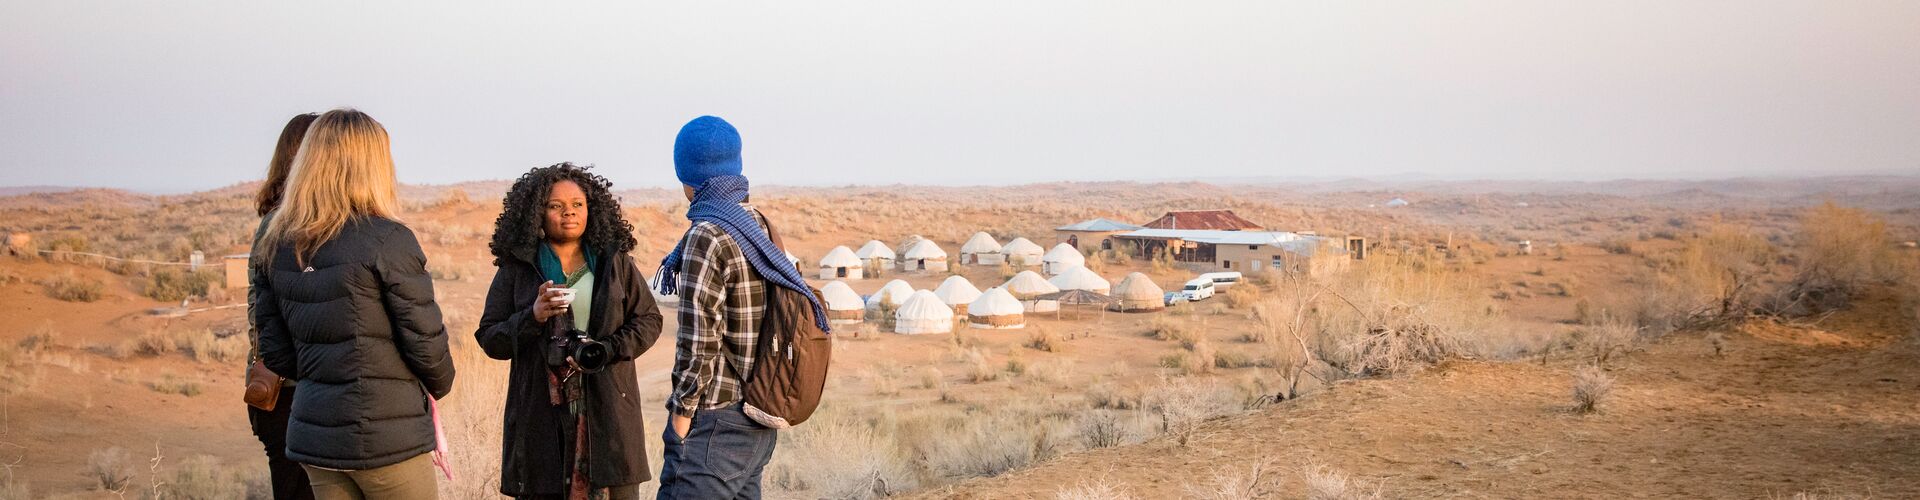 Travellers standing outside desert yurt camp, Uzbekistan